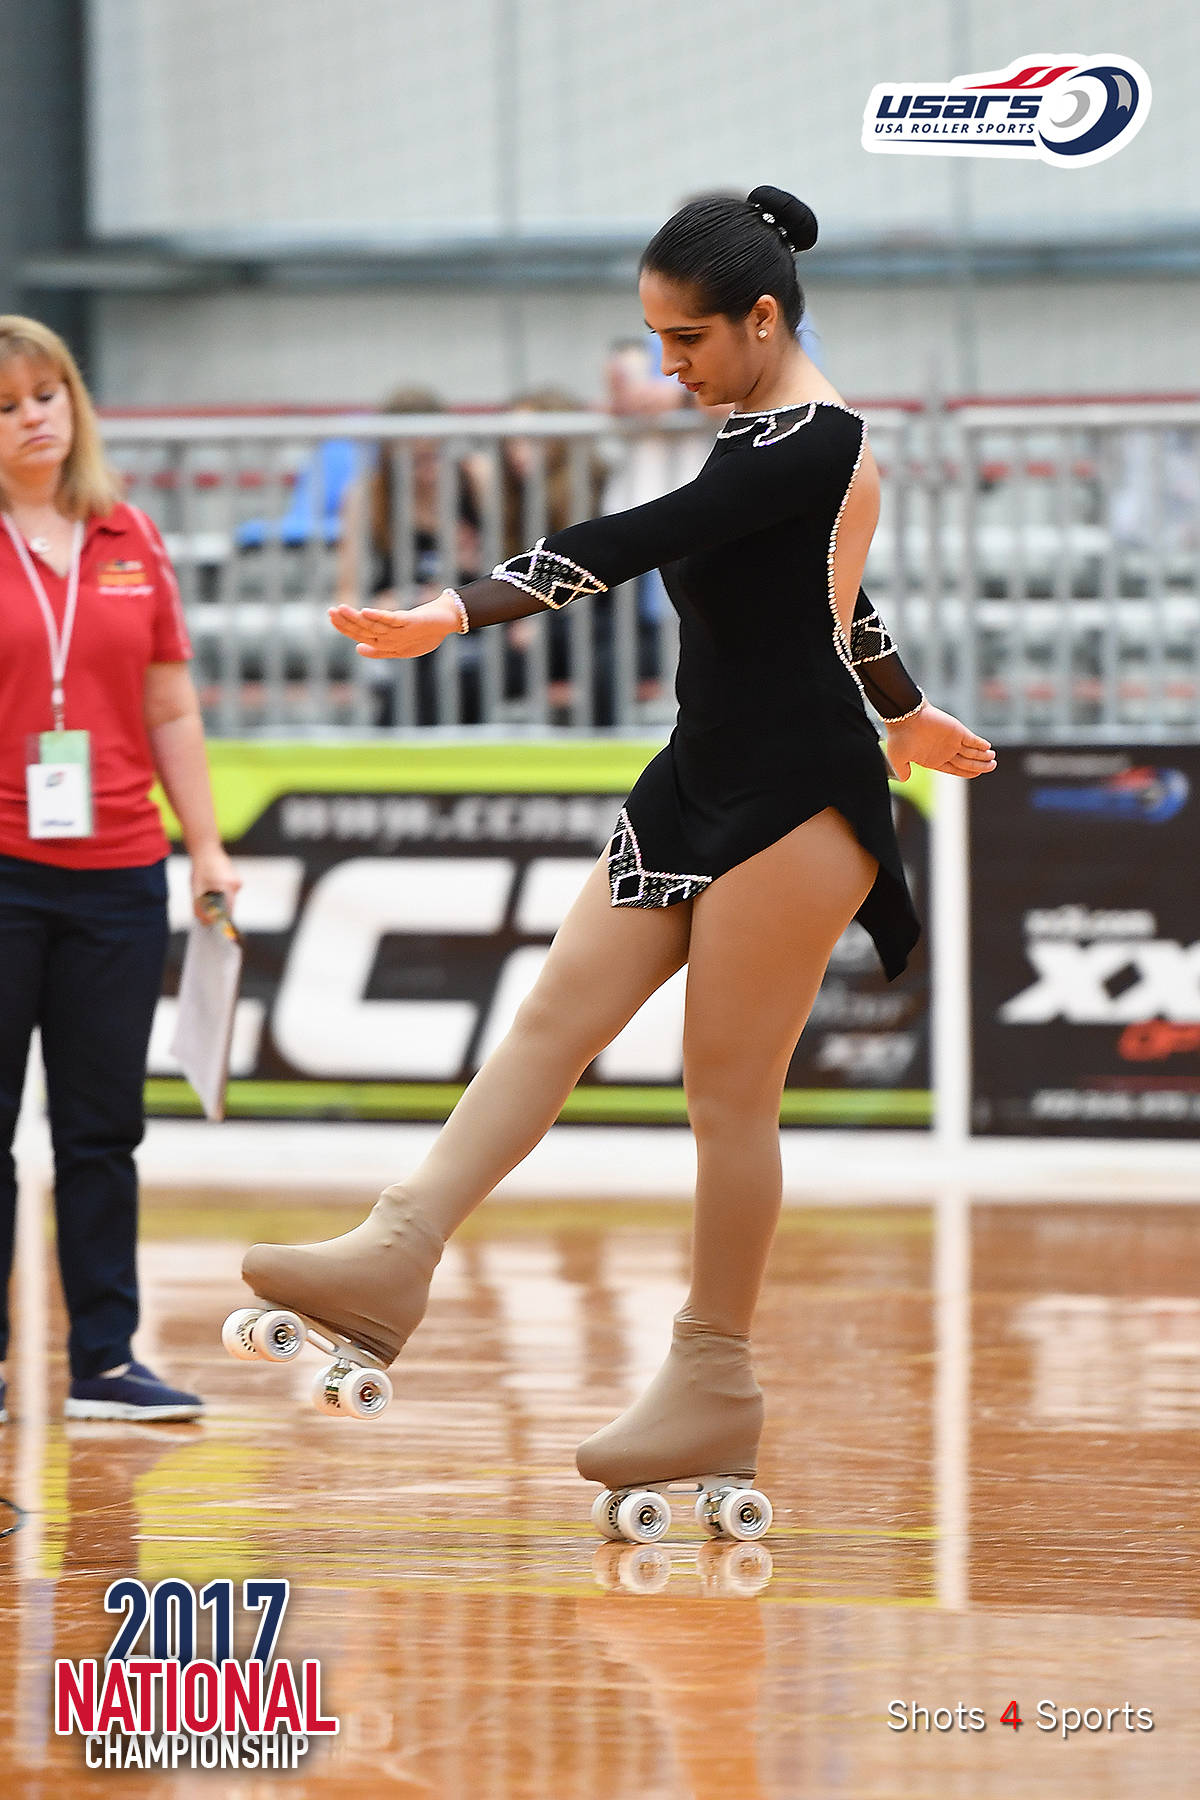 Natasha Kacharia performs at the US Roller Figure Skating Nationals. Courtesy of Shots 4 Sports